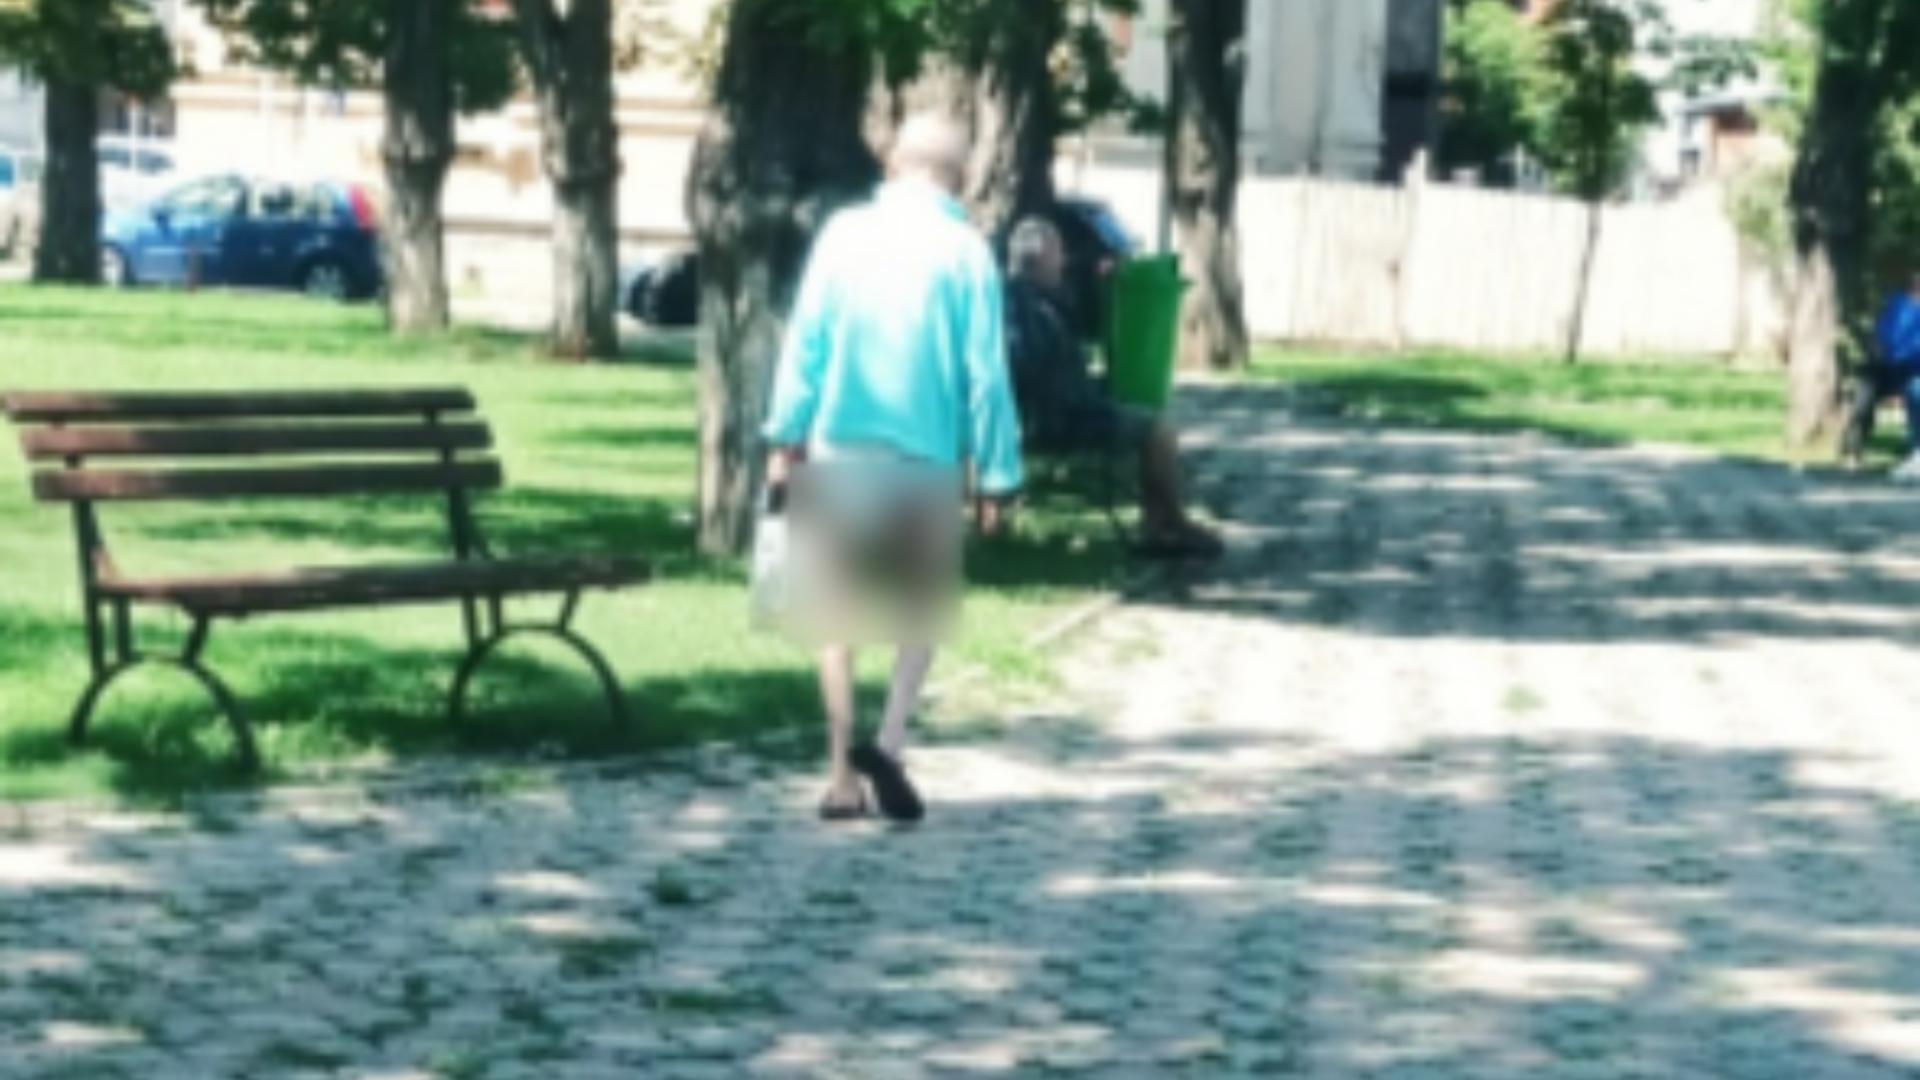 Imagini șocante – Un bătrân a fugit din spital și a mers pe strazile din Buzău în pampers, cu sonda în mână – Nimeni nu s-a sesizat să anunțe autoritățile